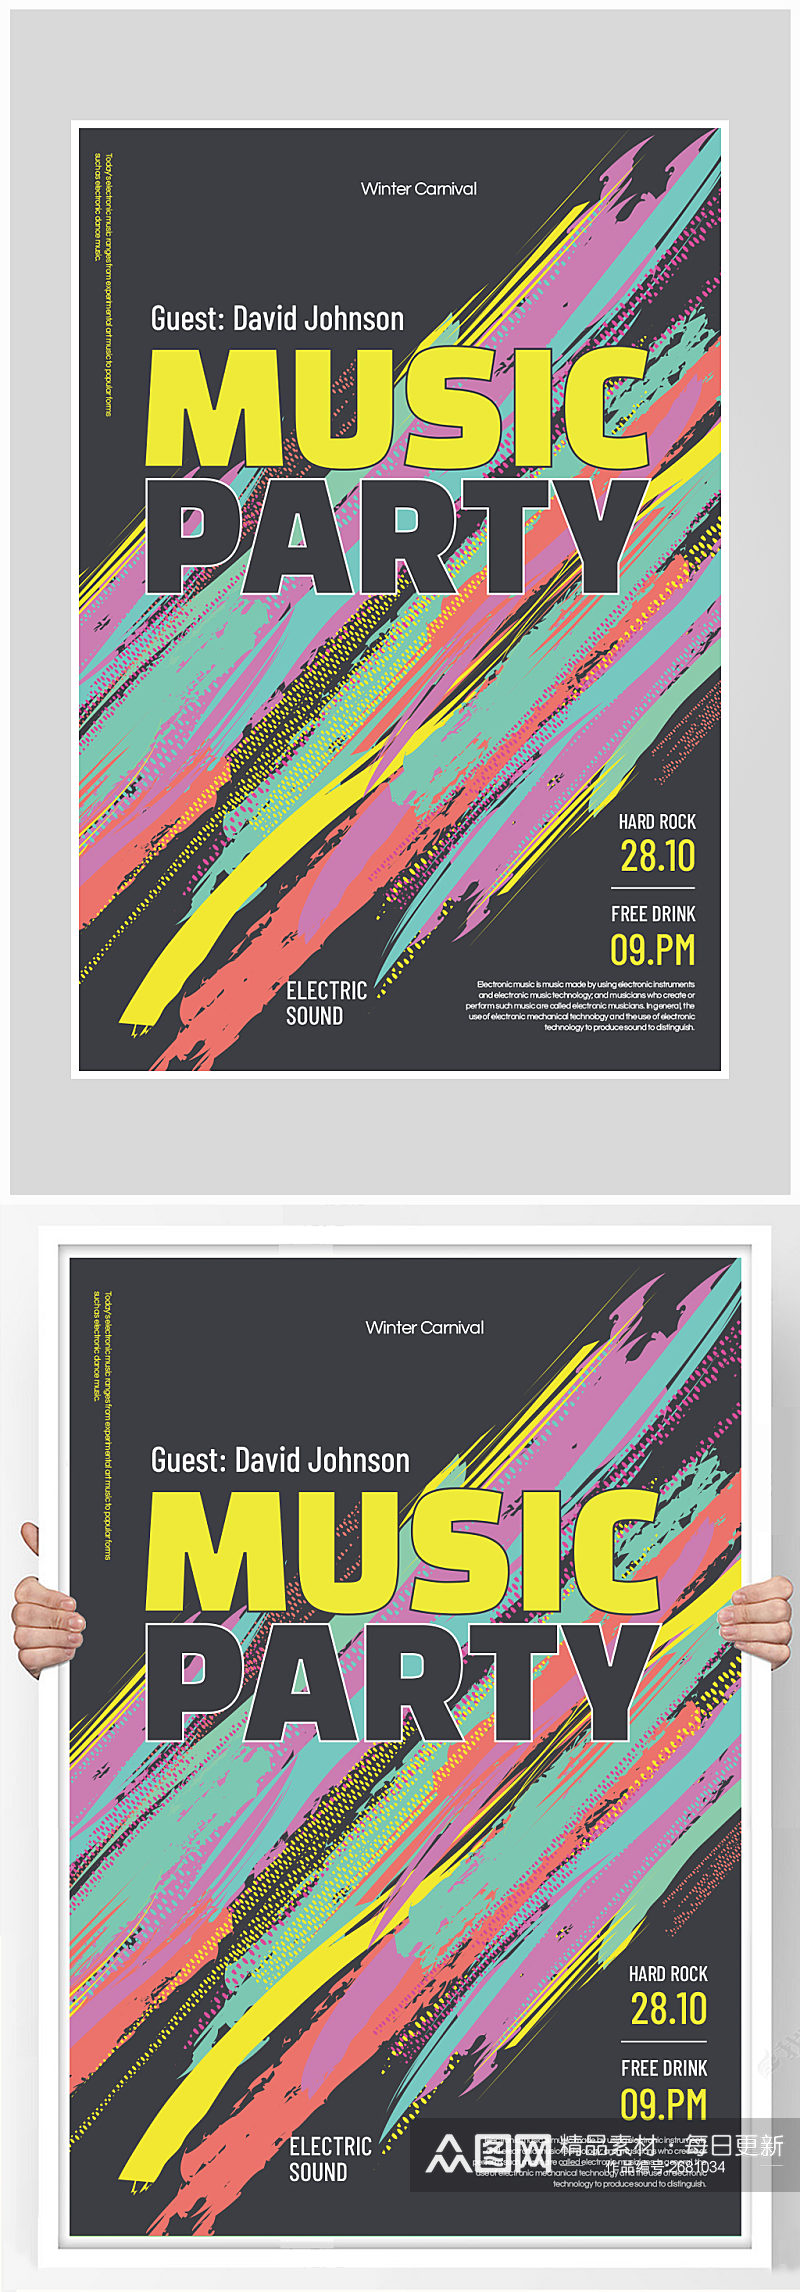 彩墨背景音乐派对狂欢海报设计素材